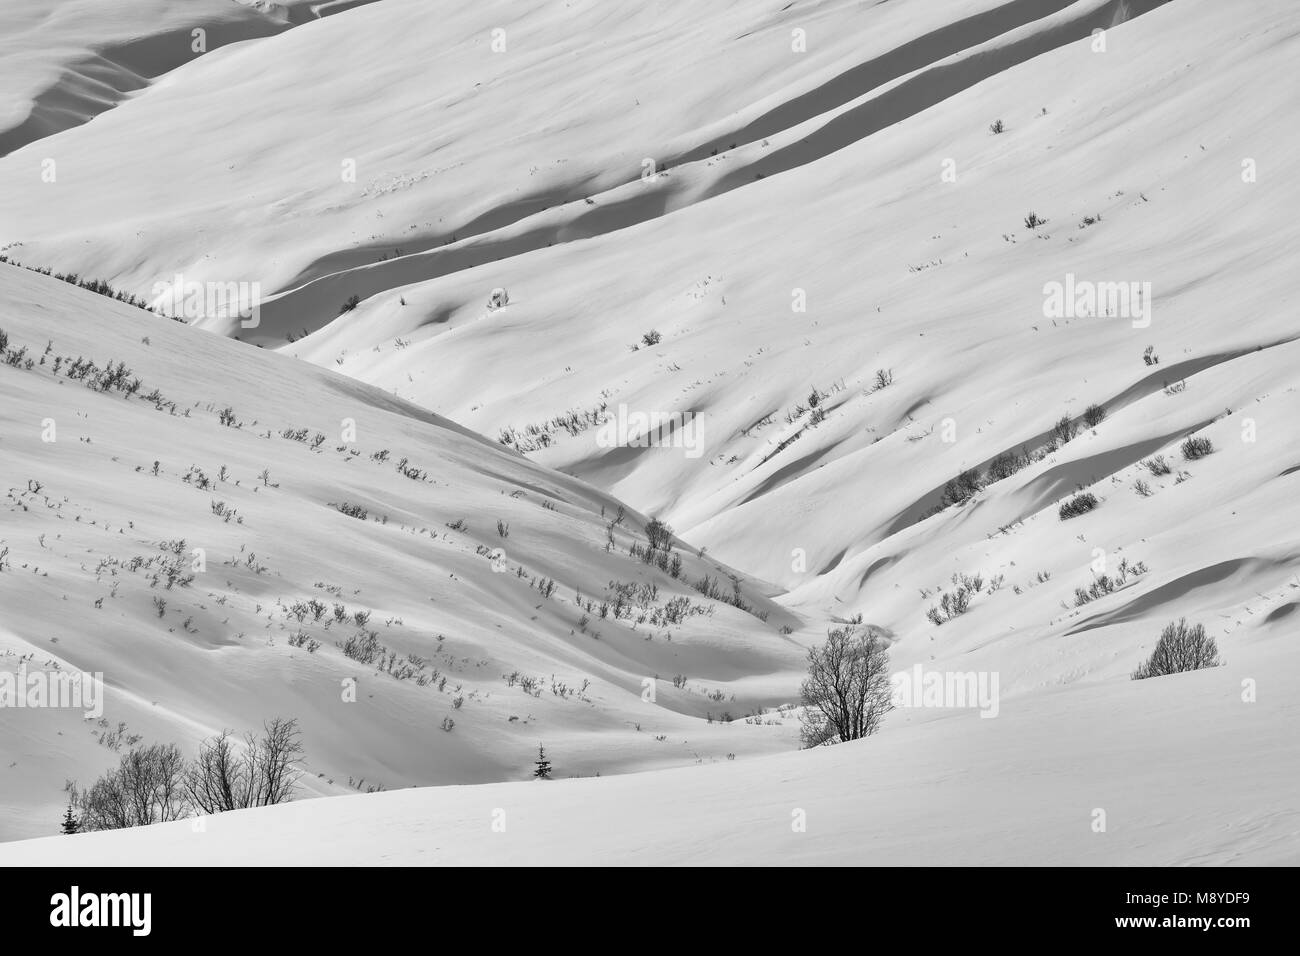 La couverture de neige Talkeetna Mountains, à Hatcher Pass crée des formes fluides à la fin de l'hiver dans le sud de l'Alaska. Banque D'Images